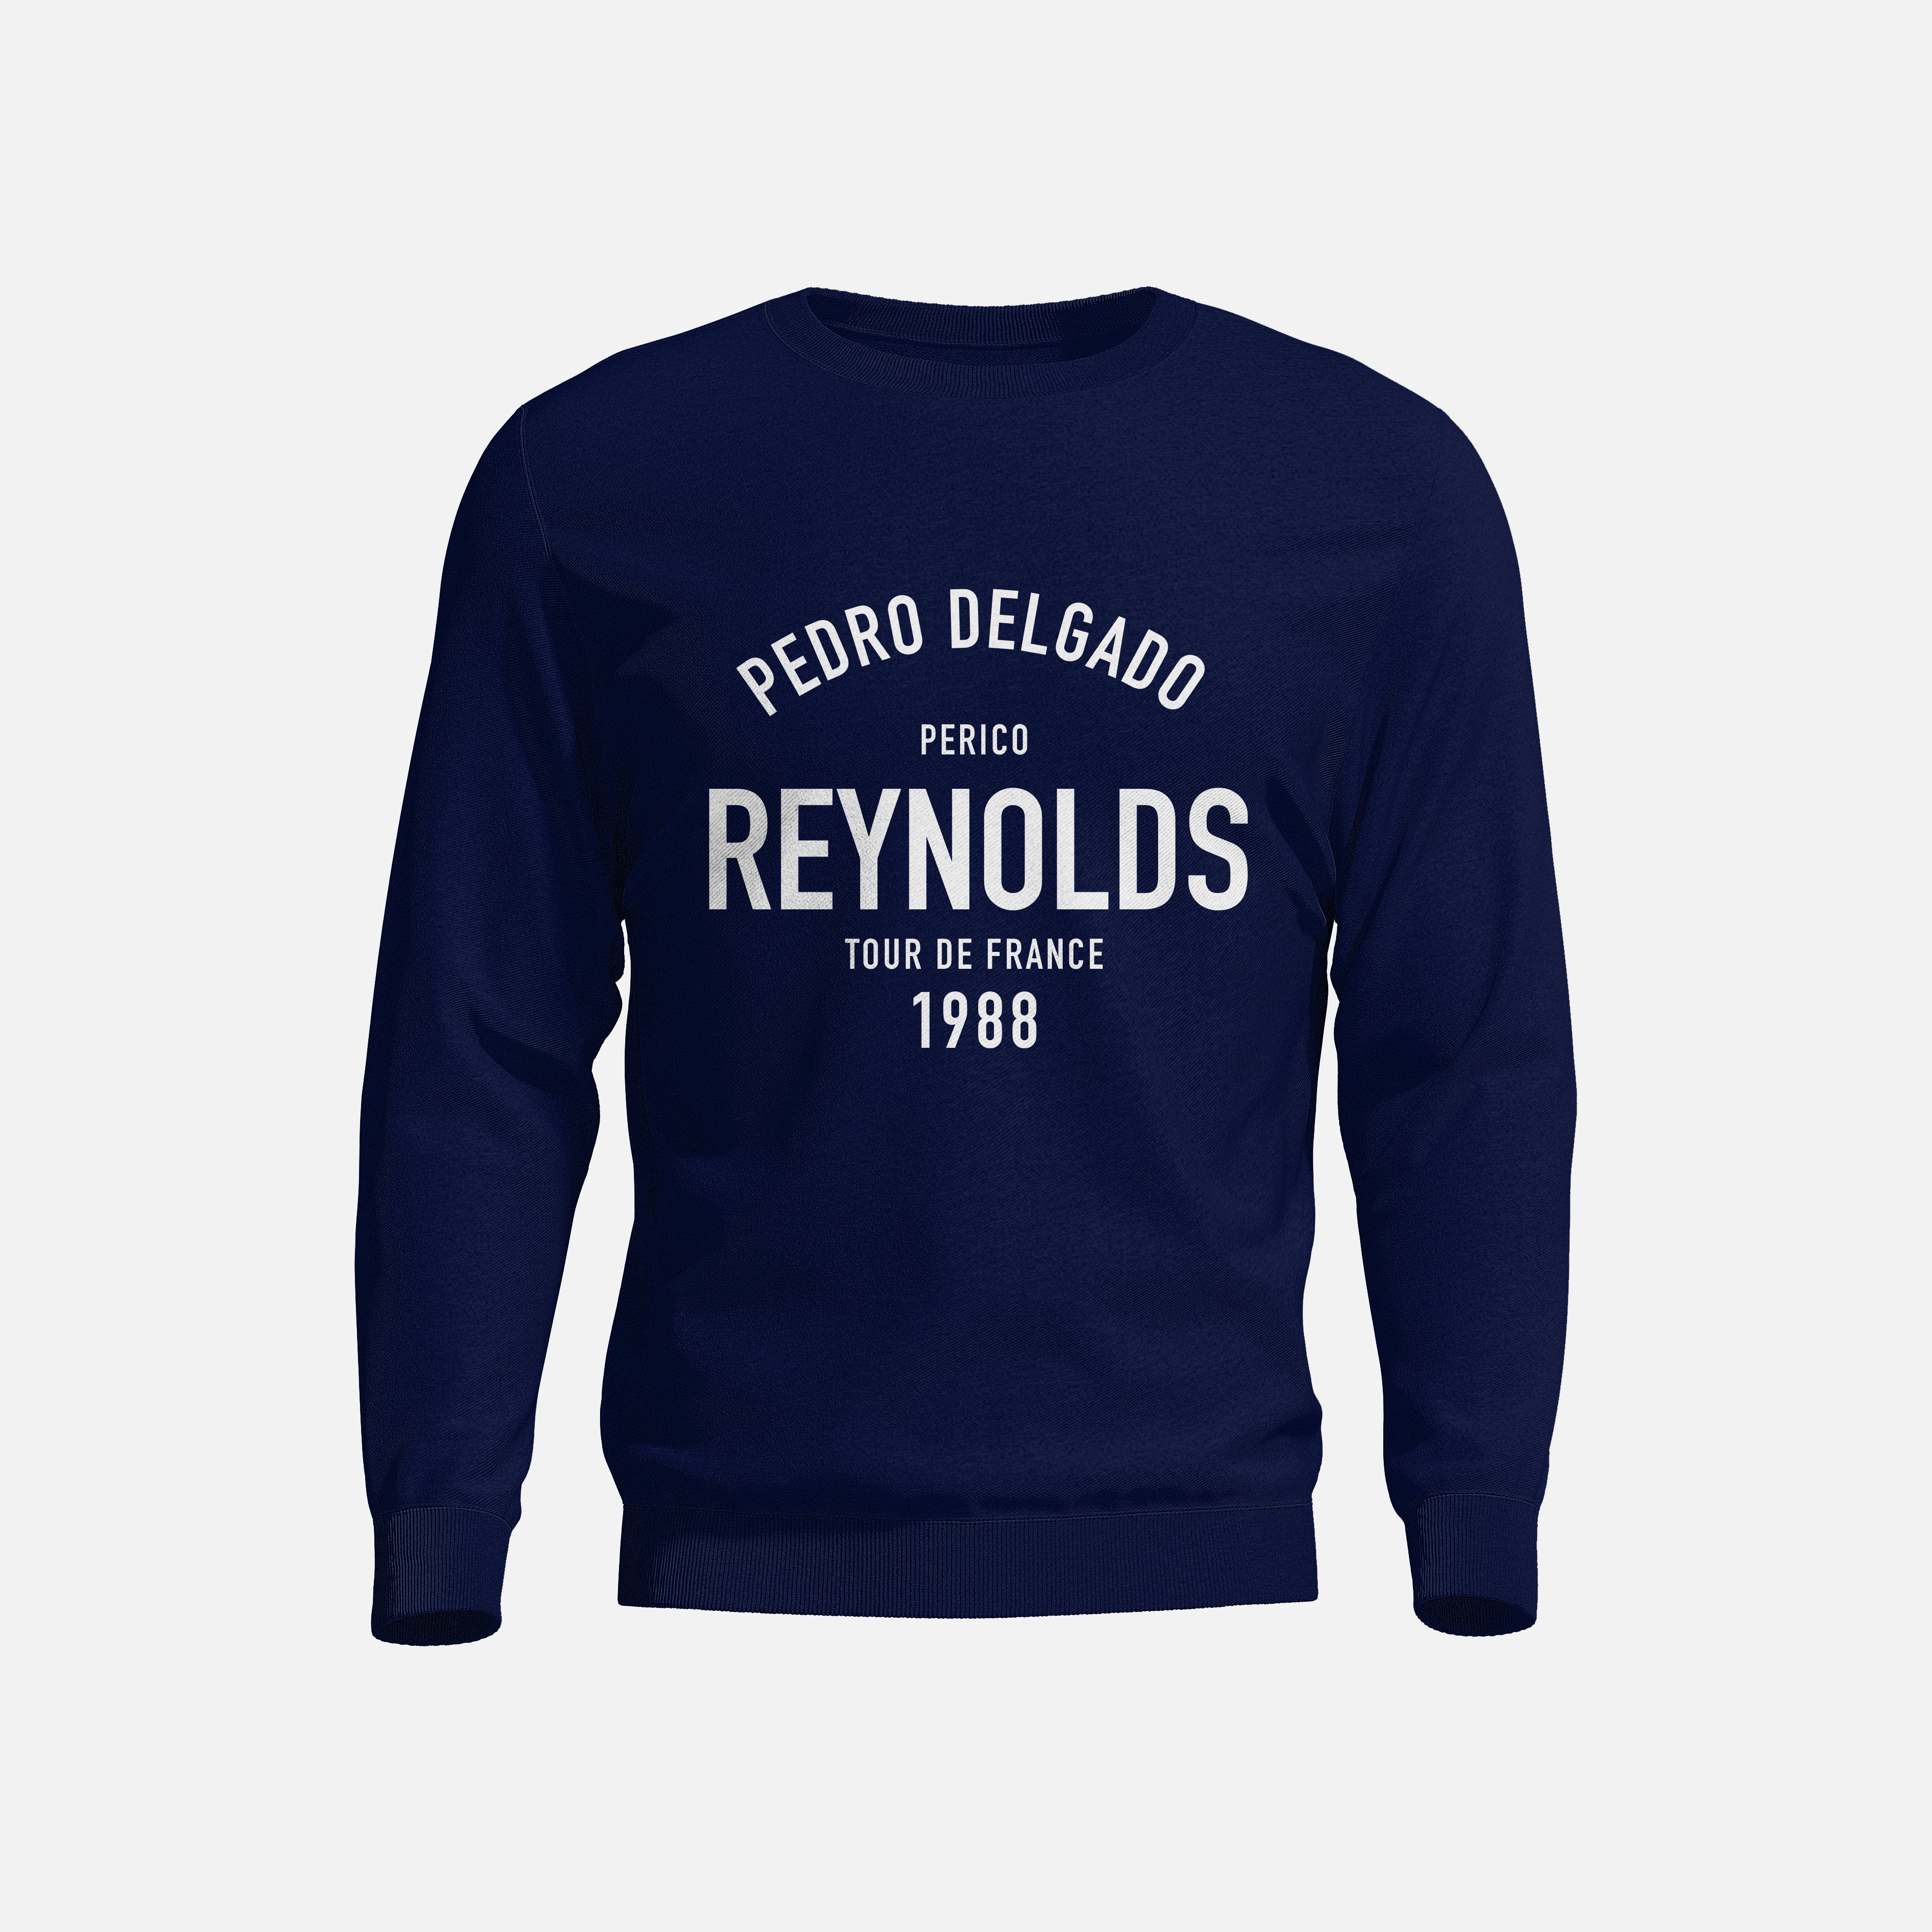 Pedro Delgado Reynolds - Sweatshirt